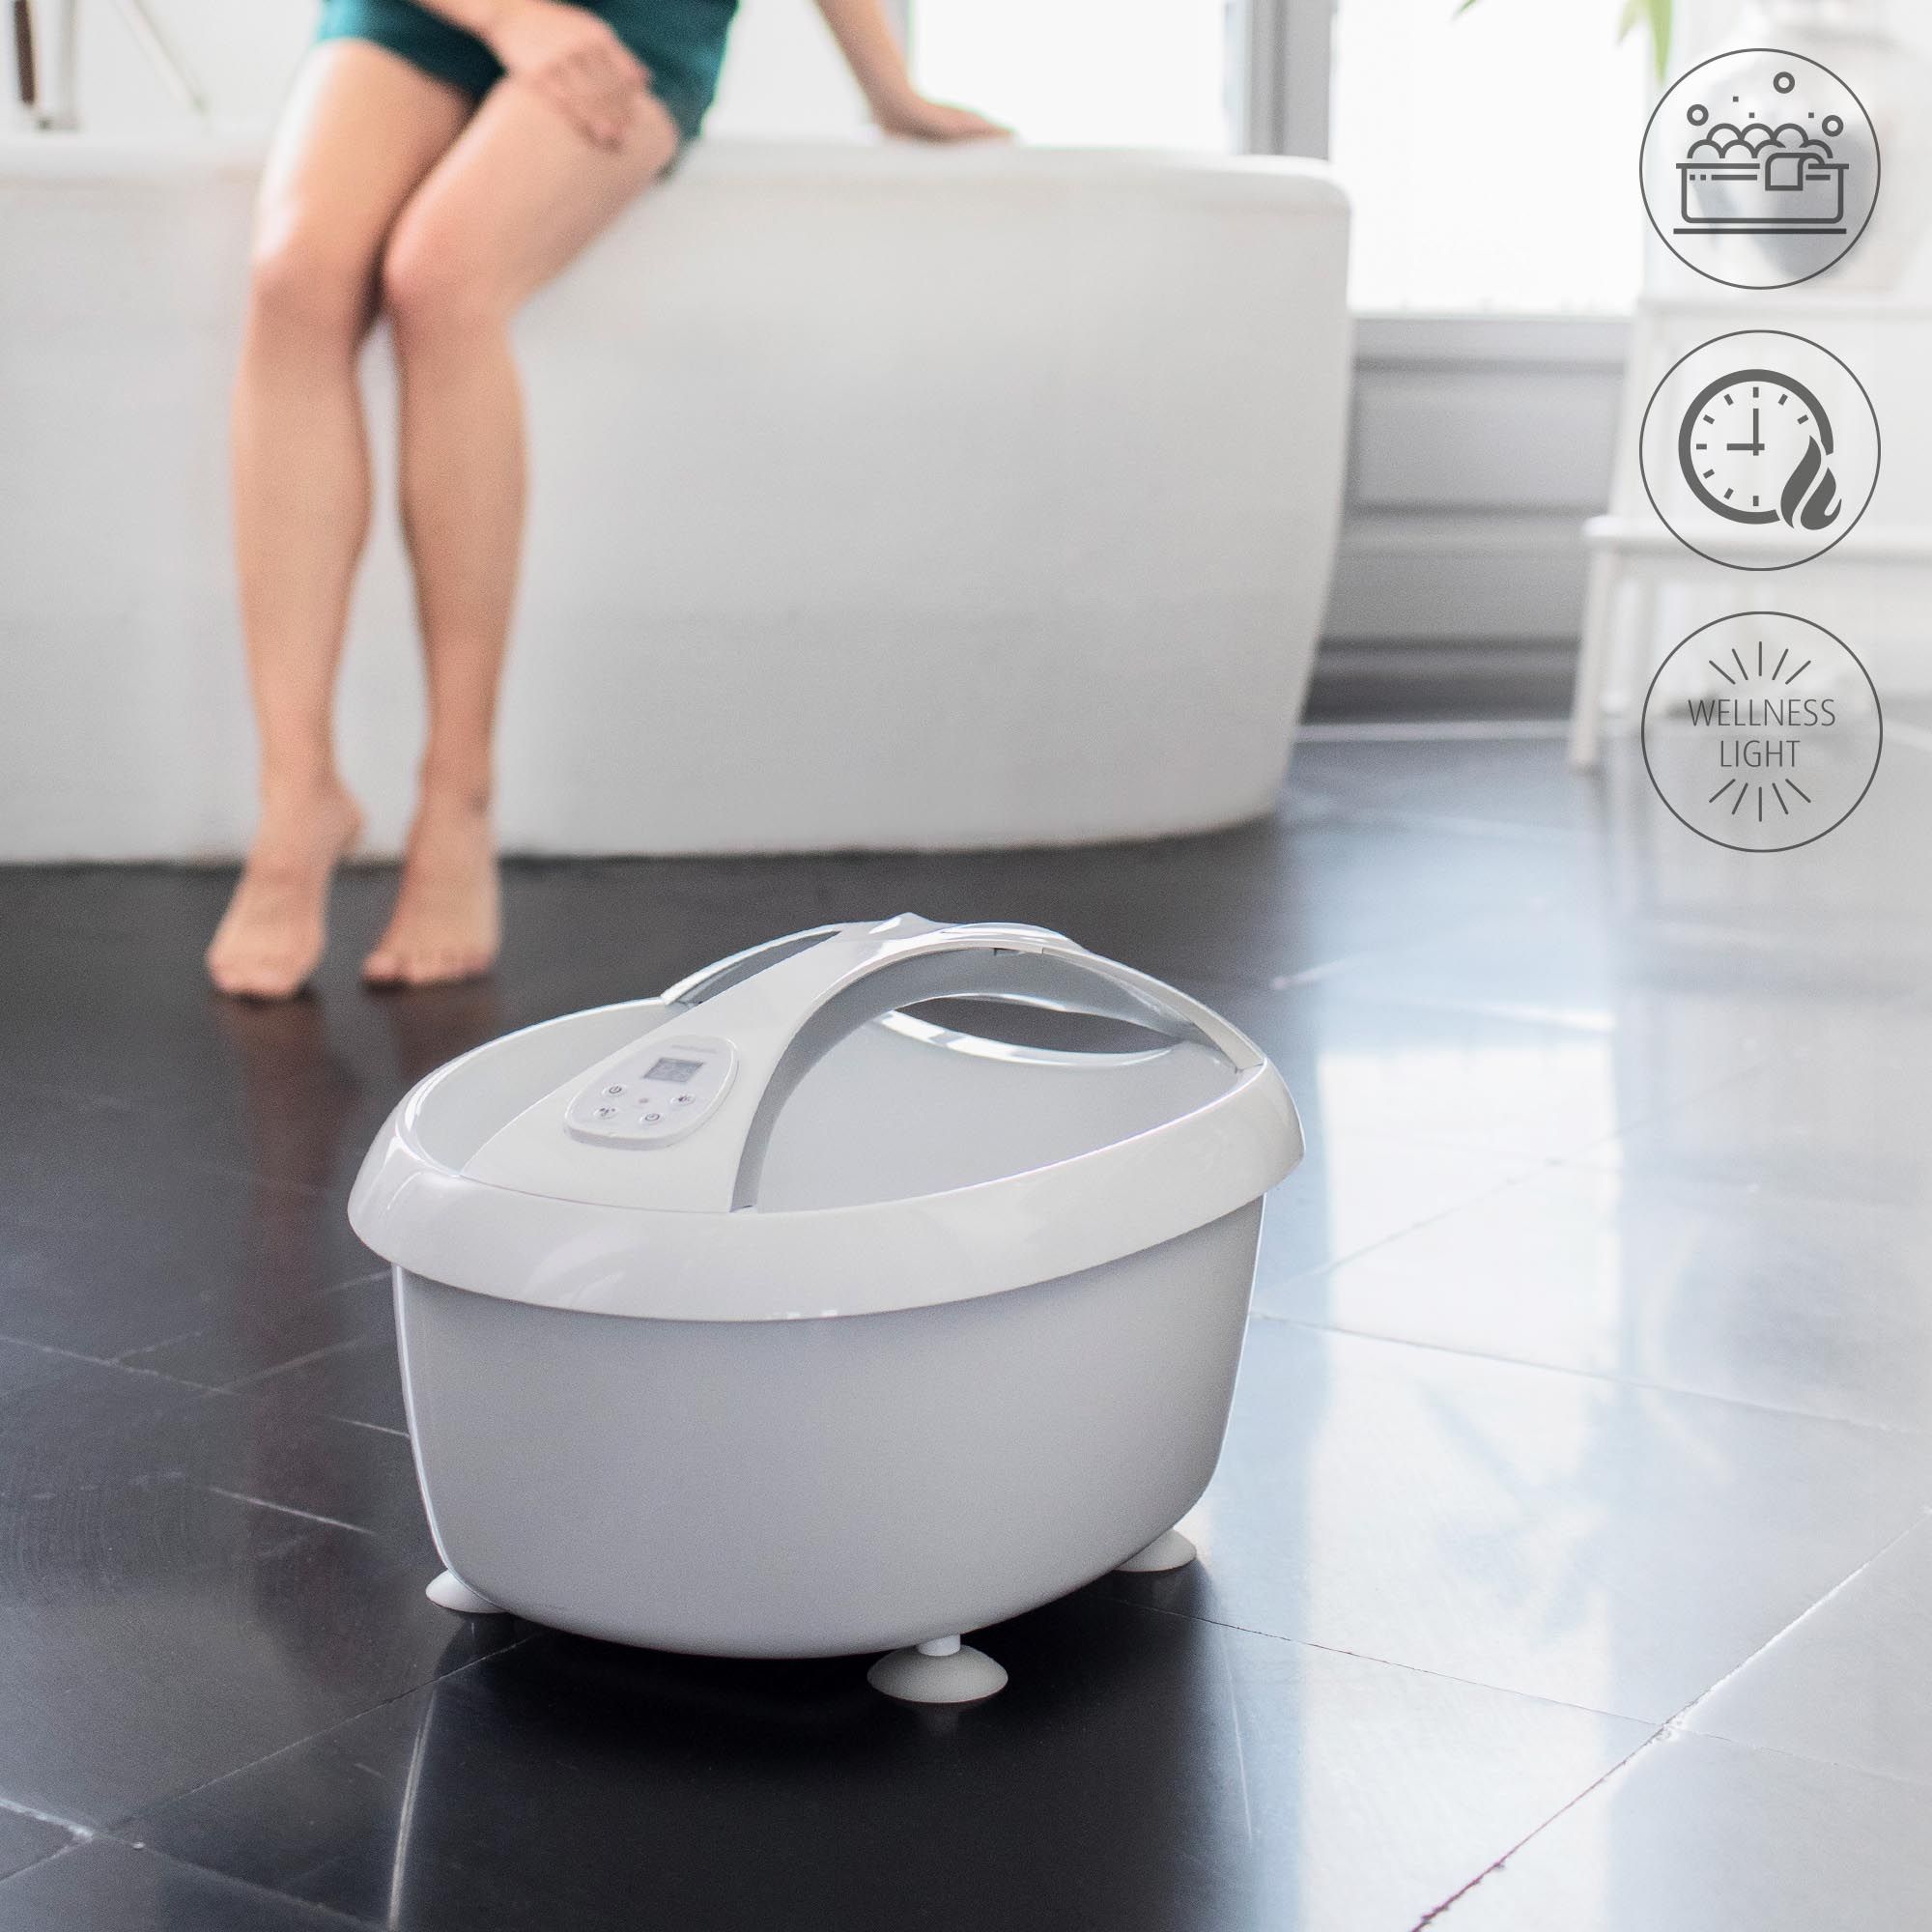 medisana FS 888 Premium Fußsprudelbad mit Fußsprudelmassage - elektrisches Fußbad mit Wärmefunktion